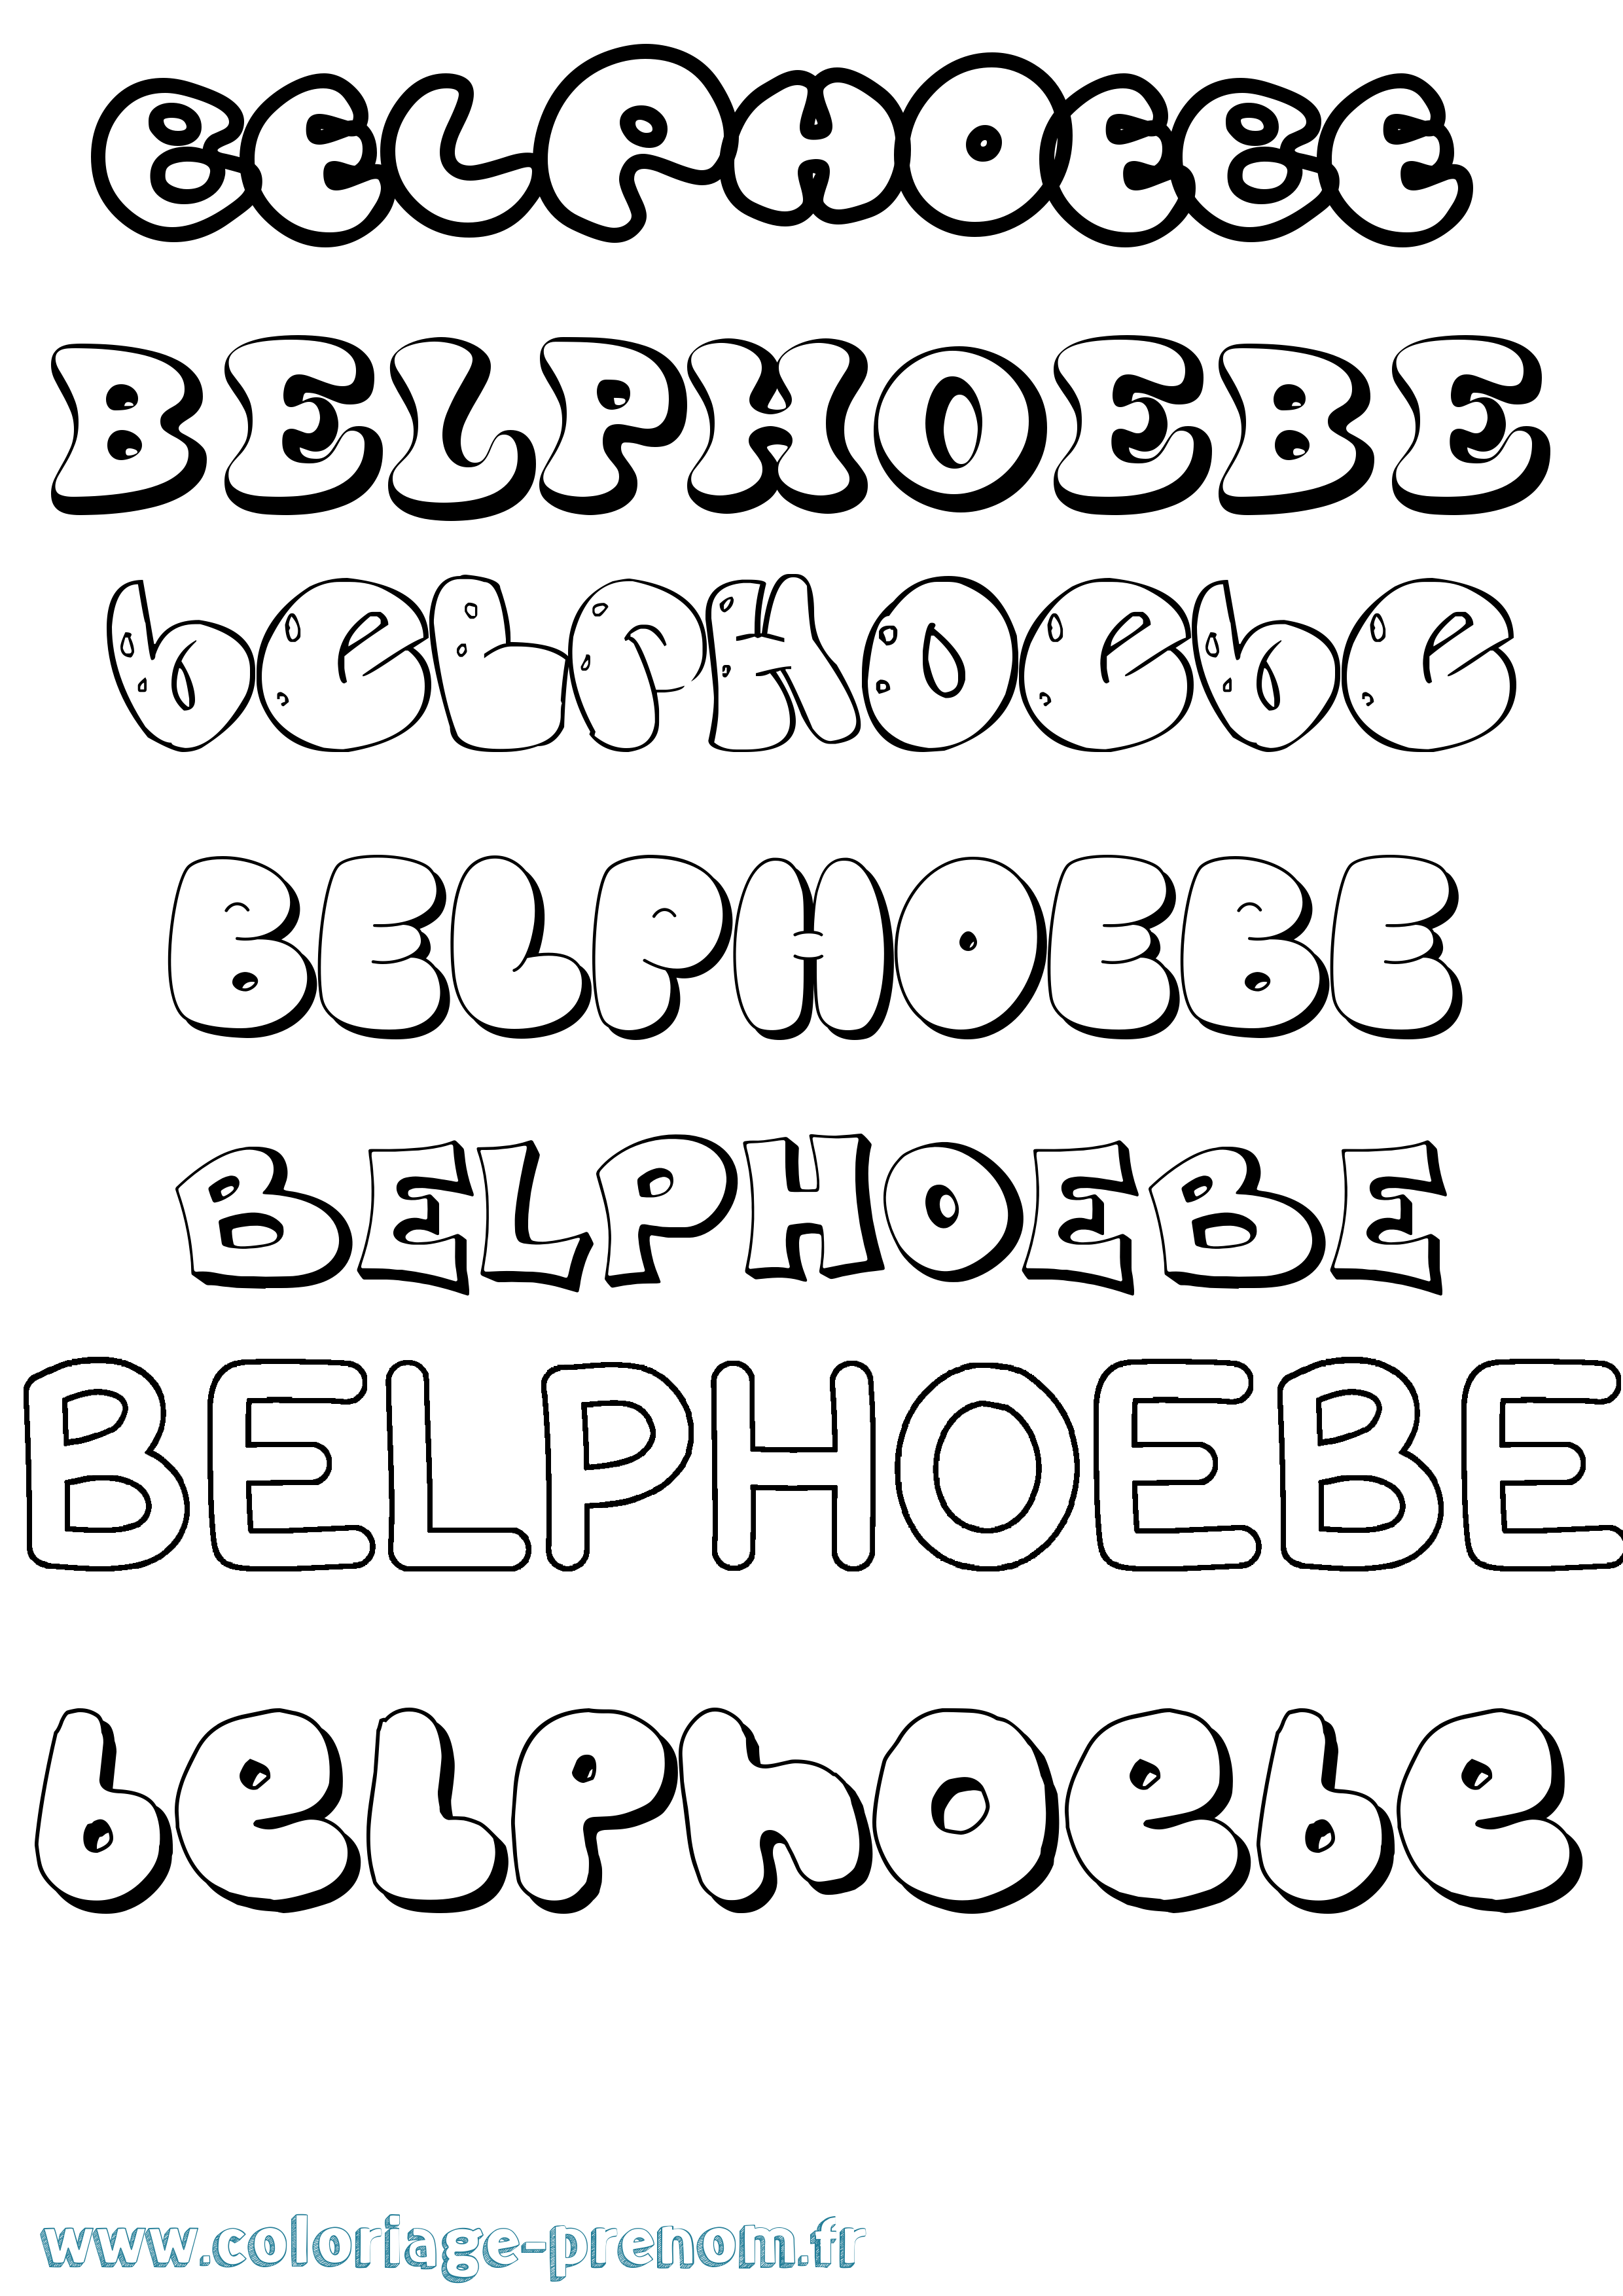 Coloriage prénom Belphoebe Bubble